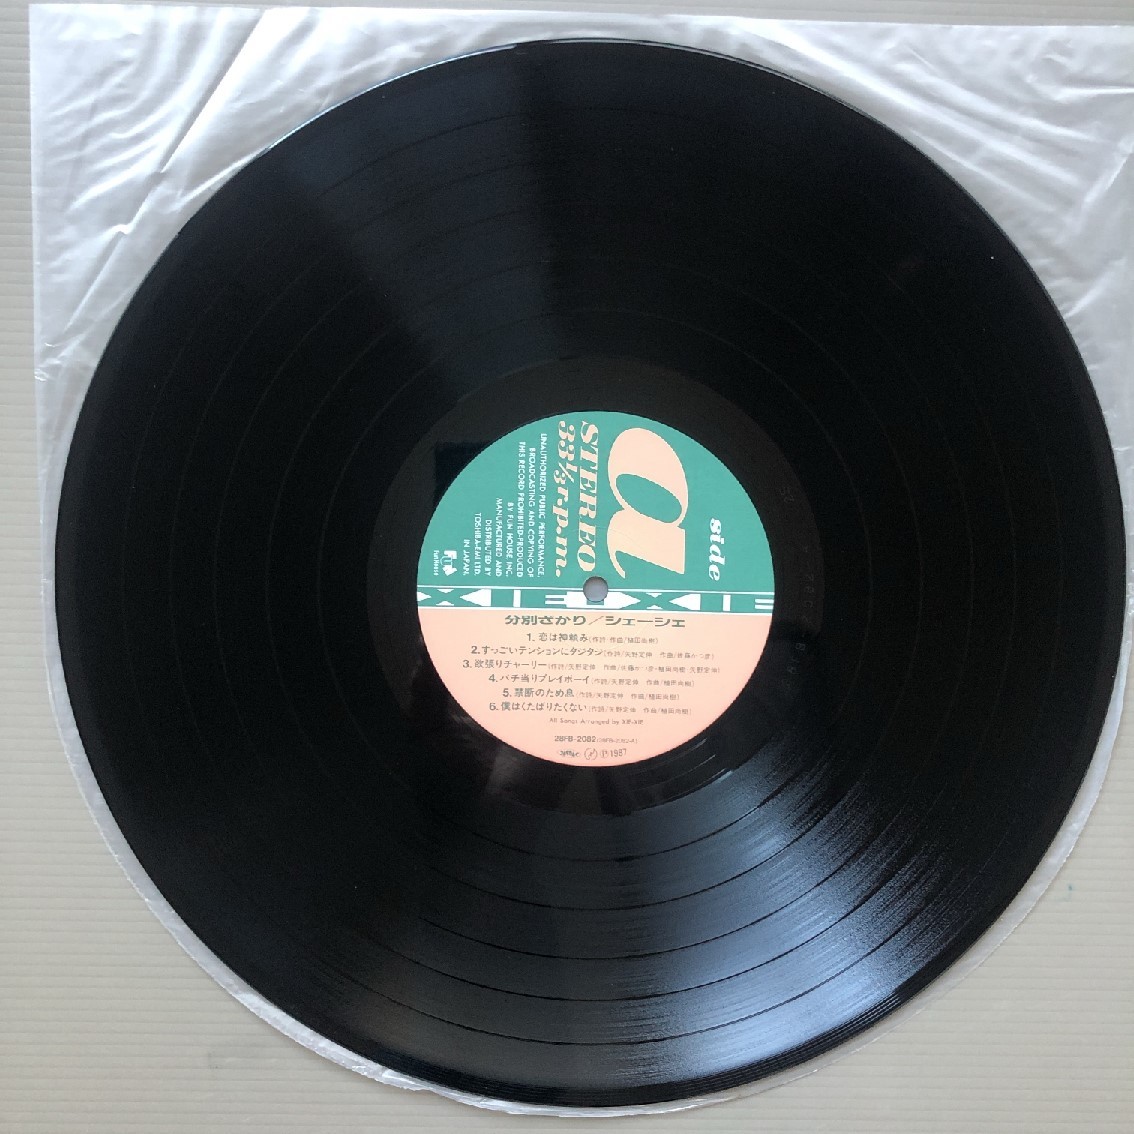 傷なし美盤 レア盤 シェーシェ Xie-Xie 1987年 LPレコード 分別ざかり L'AGE de RAISON 国内盤 オリジナルリリース盤 帯付 J-Pop_画像8